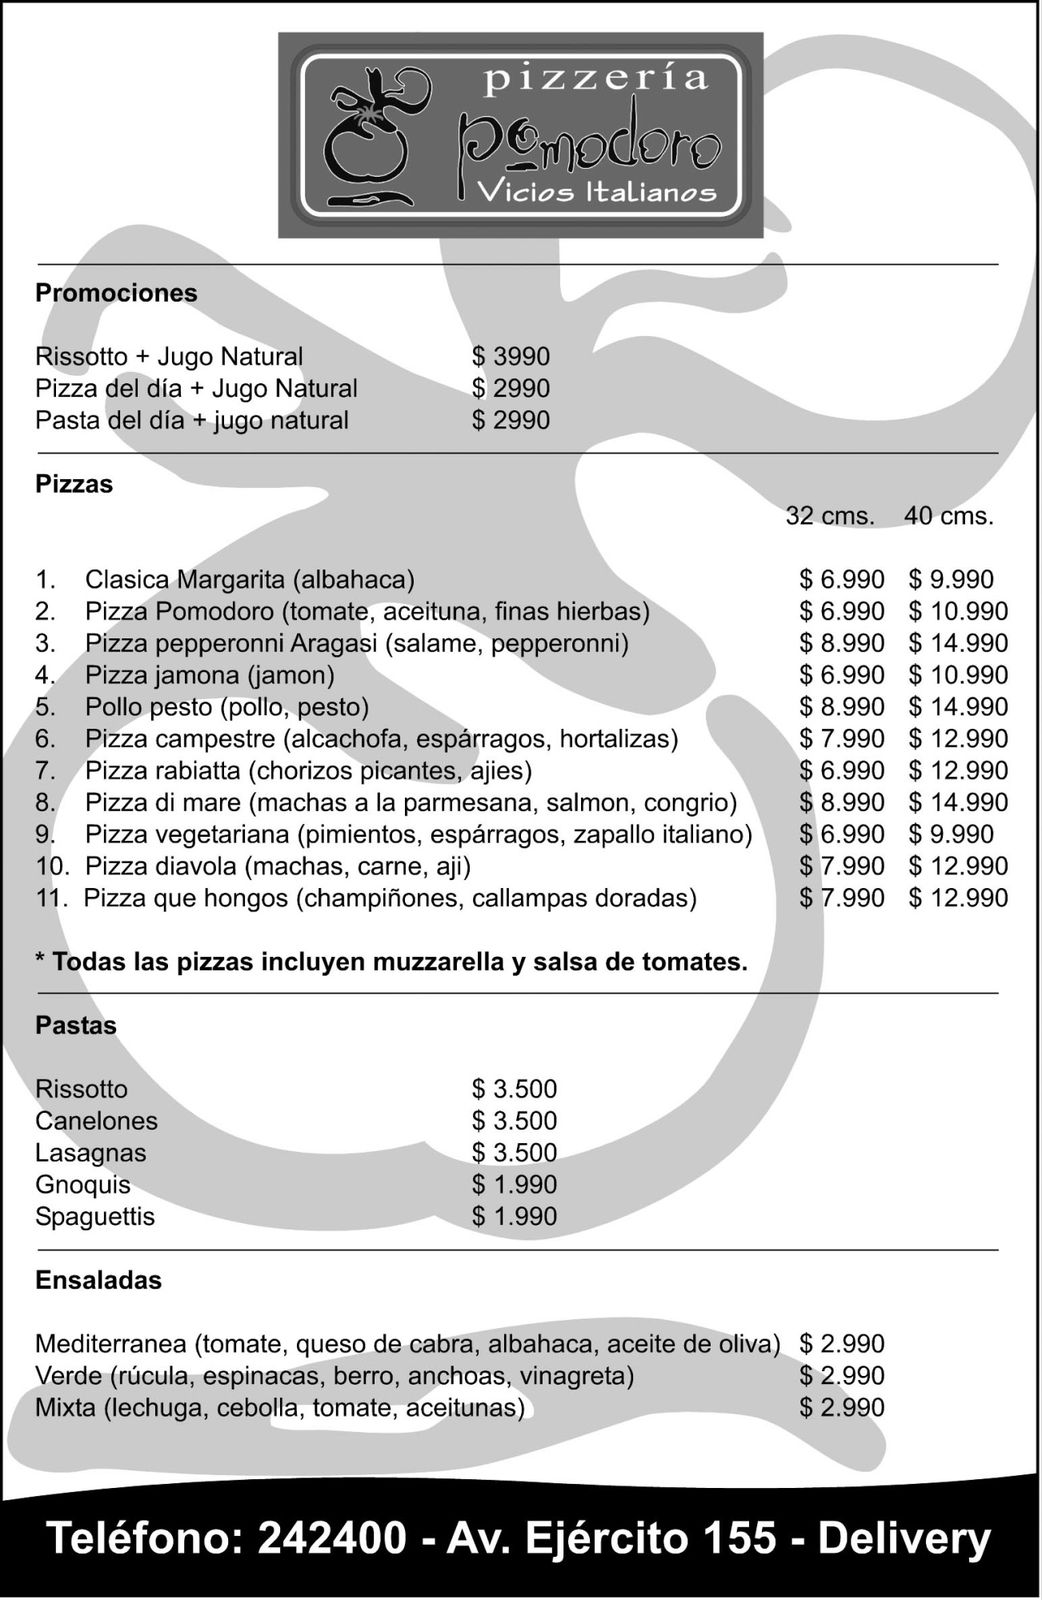 DISEÑO E IMPRESION DE VOLANTES PARA PIZZERIA POMODORO (IQUIQUE - CHILE) -  Publicamos: Arte / Diseño / Ilustración / Imagen Corporativa / Impresiones